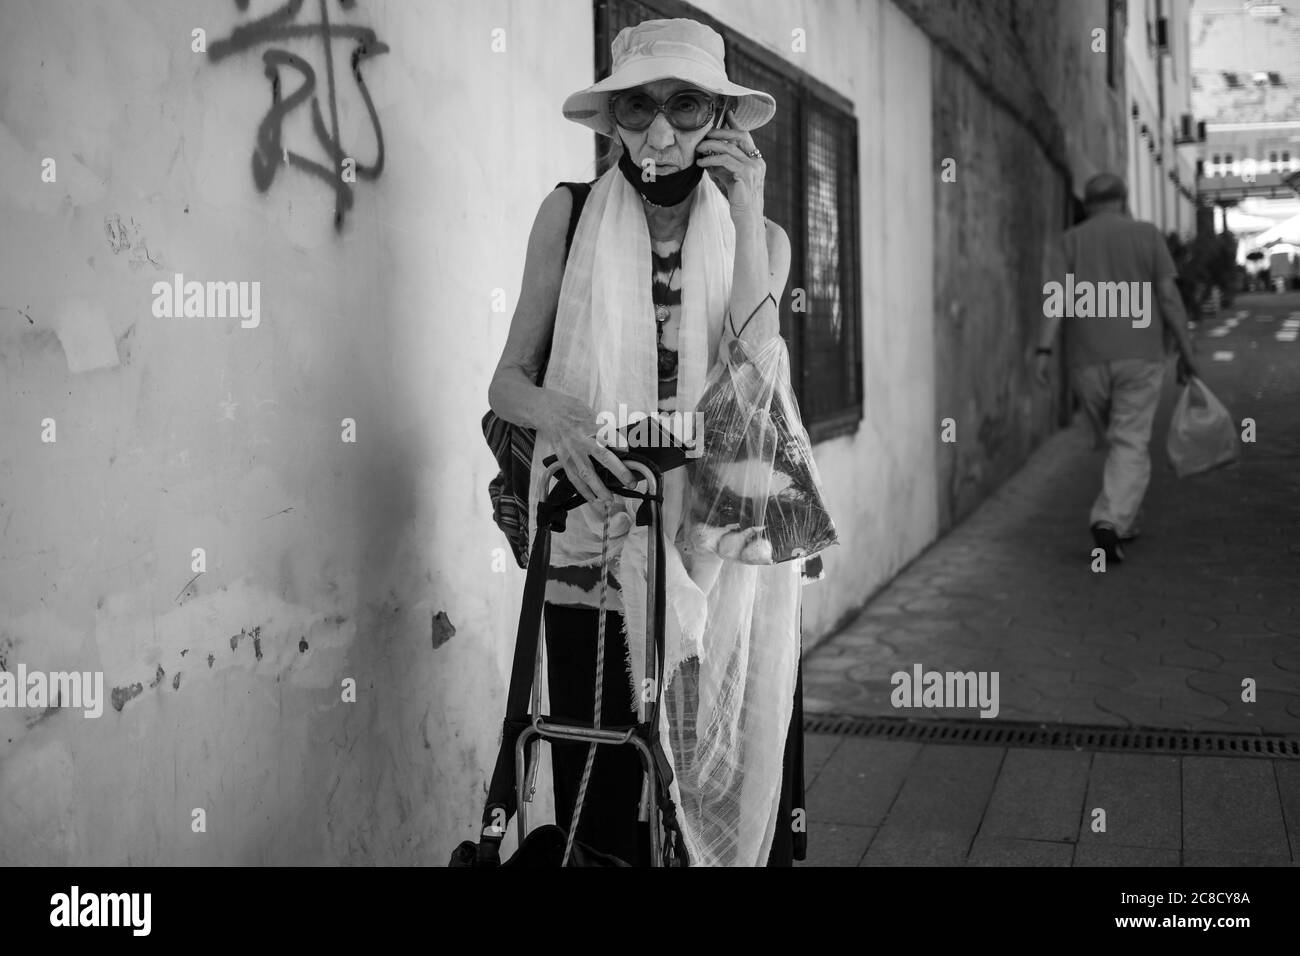 Belgrad, Serbien, 9. Juli 2020: Eine ältere Dame, die auf der Straße steht und telefoniert (S/W) Stockfoto